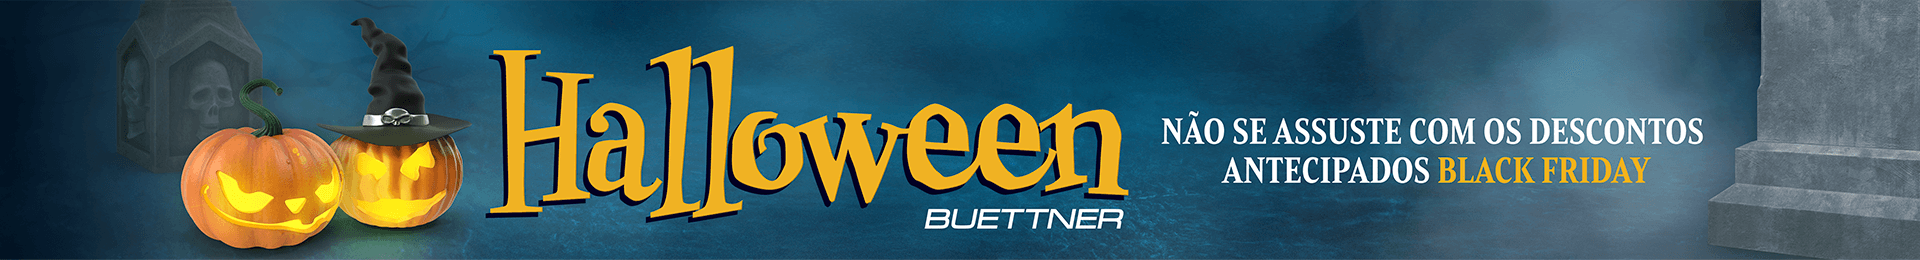 Halloween Buettner